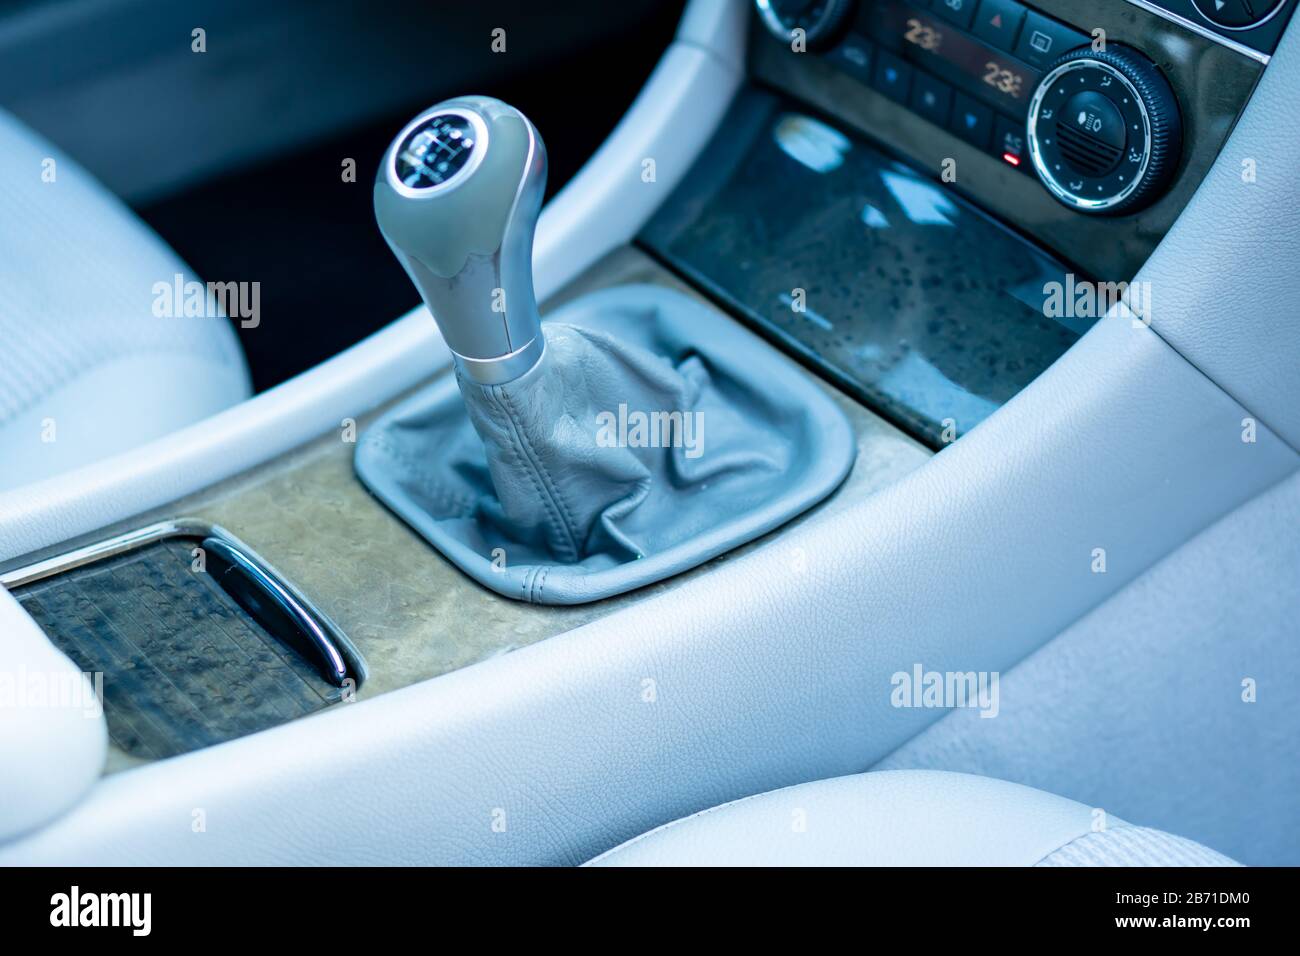 Auto-Schalthebel stockfoto. Bild von automobil, steuerknüppel - 21221594